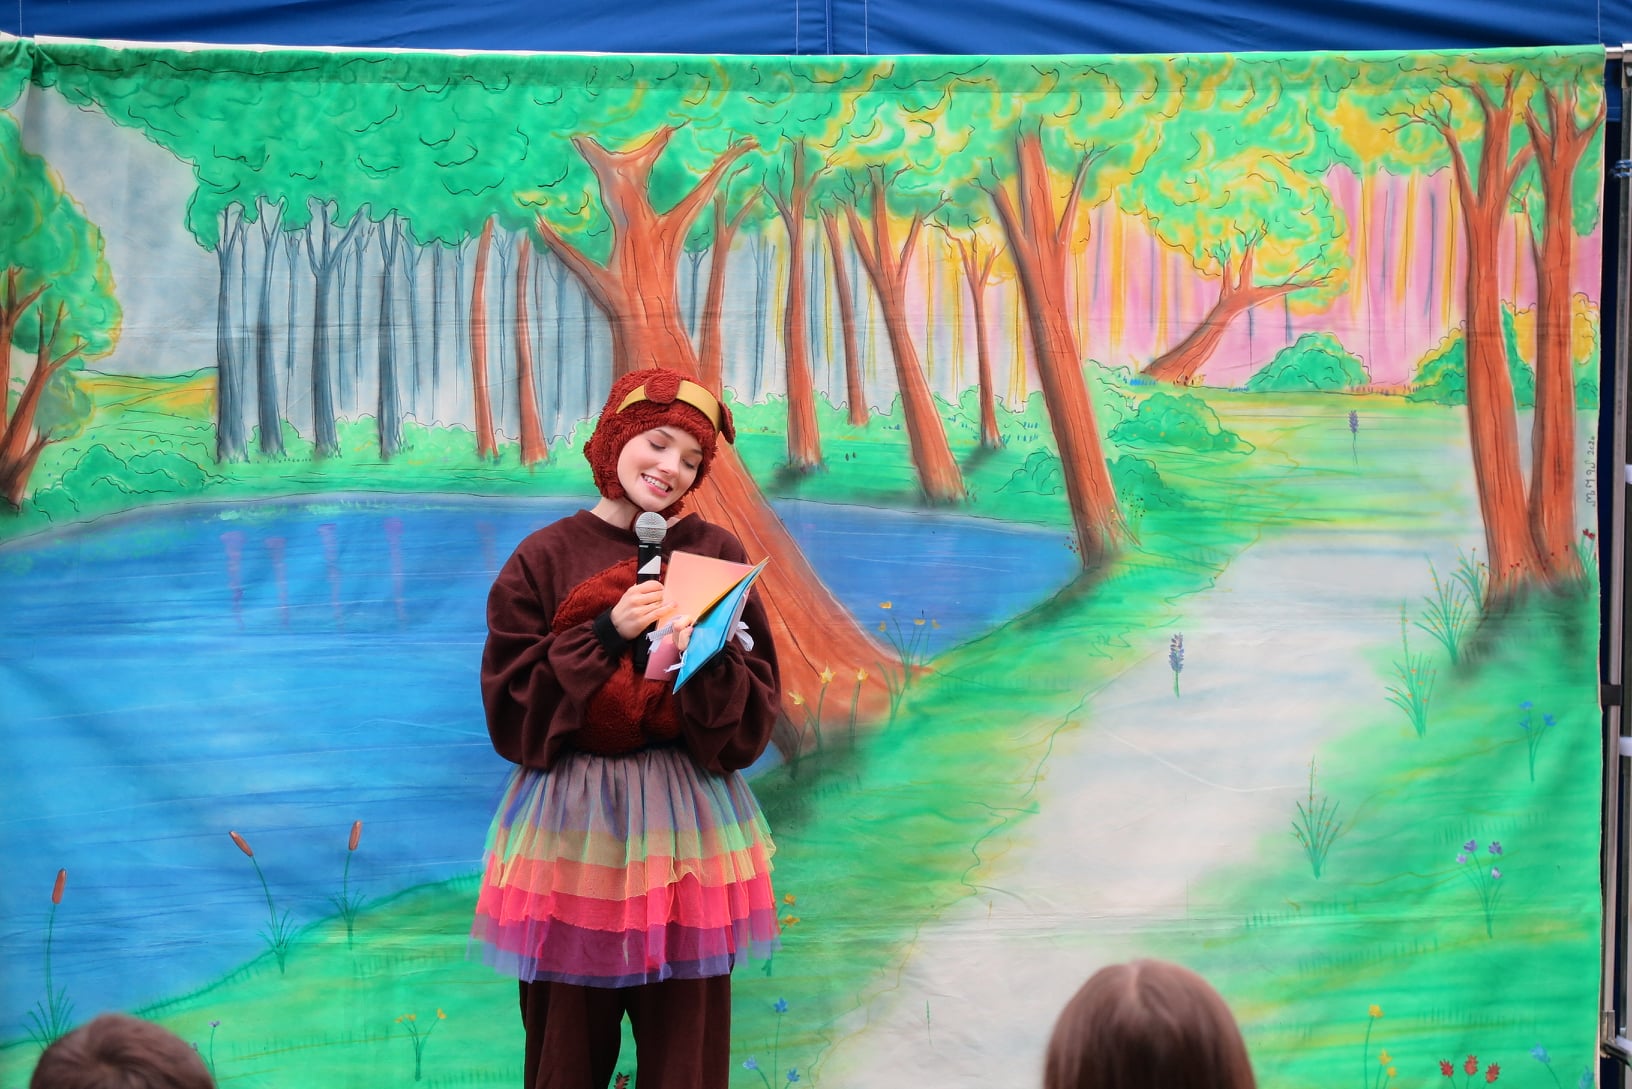 aktorka z teatru Maska przebrana za misia trzyma w ręku mikrofon, stoi na tle dekoracji lasu 